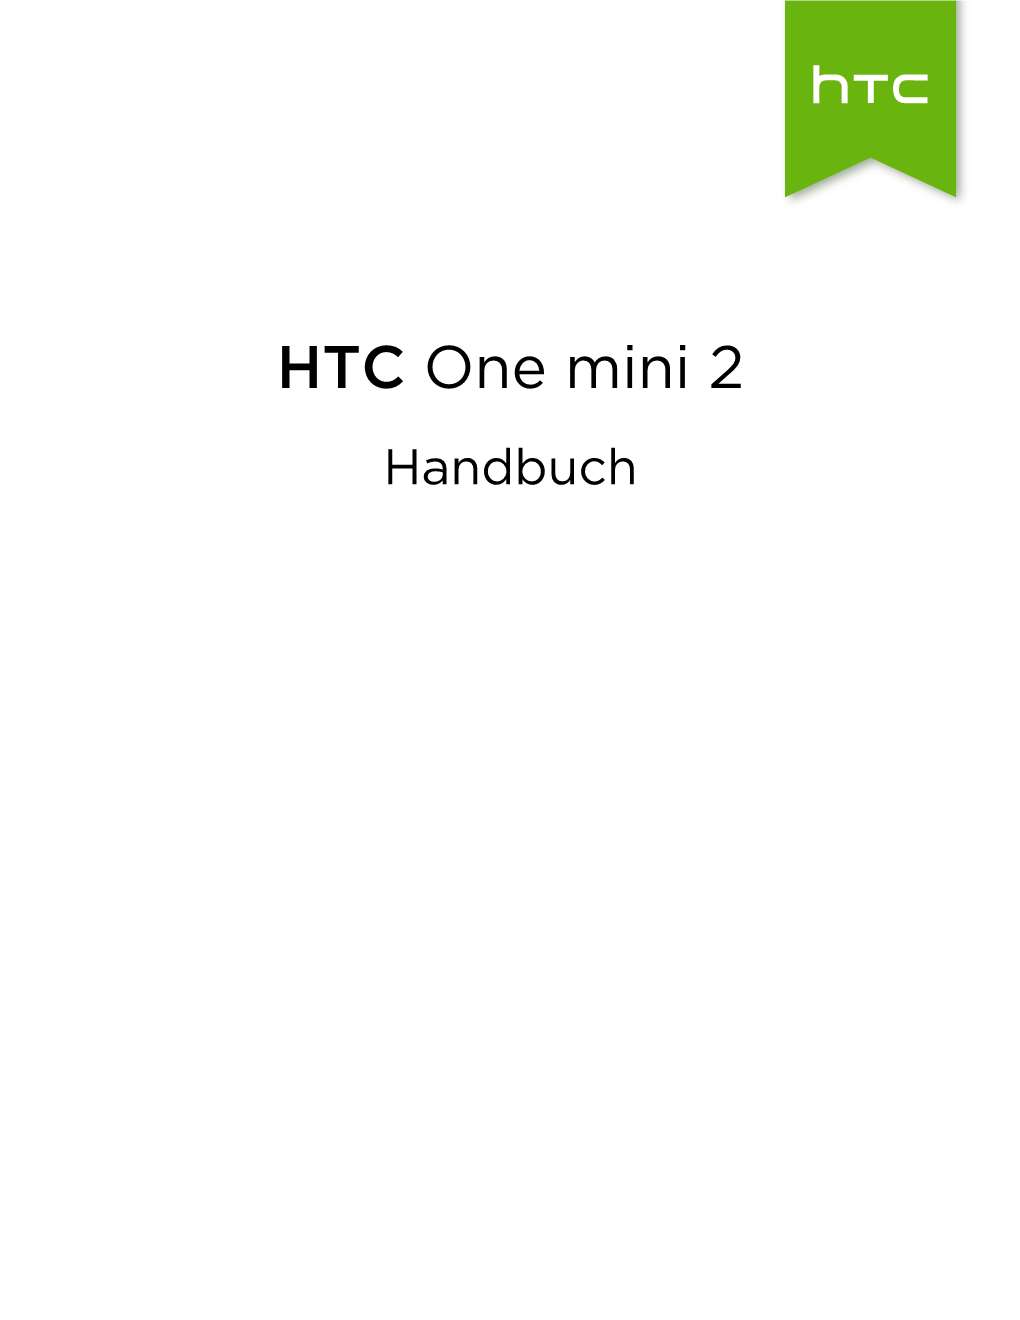 HTC One Mini 2 Handbuch 2 Inhalte Inhalte